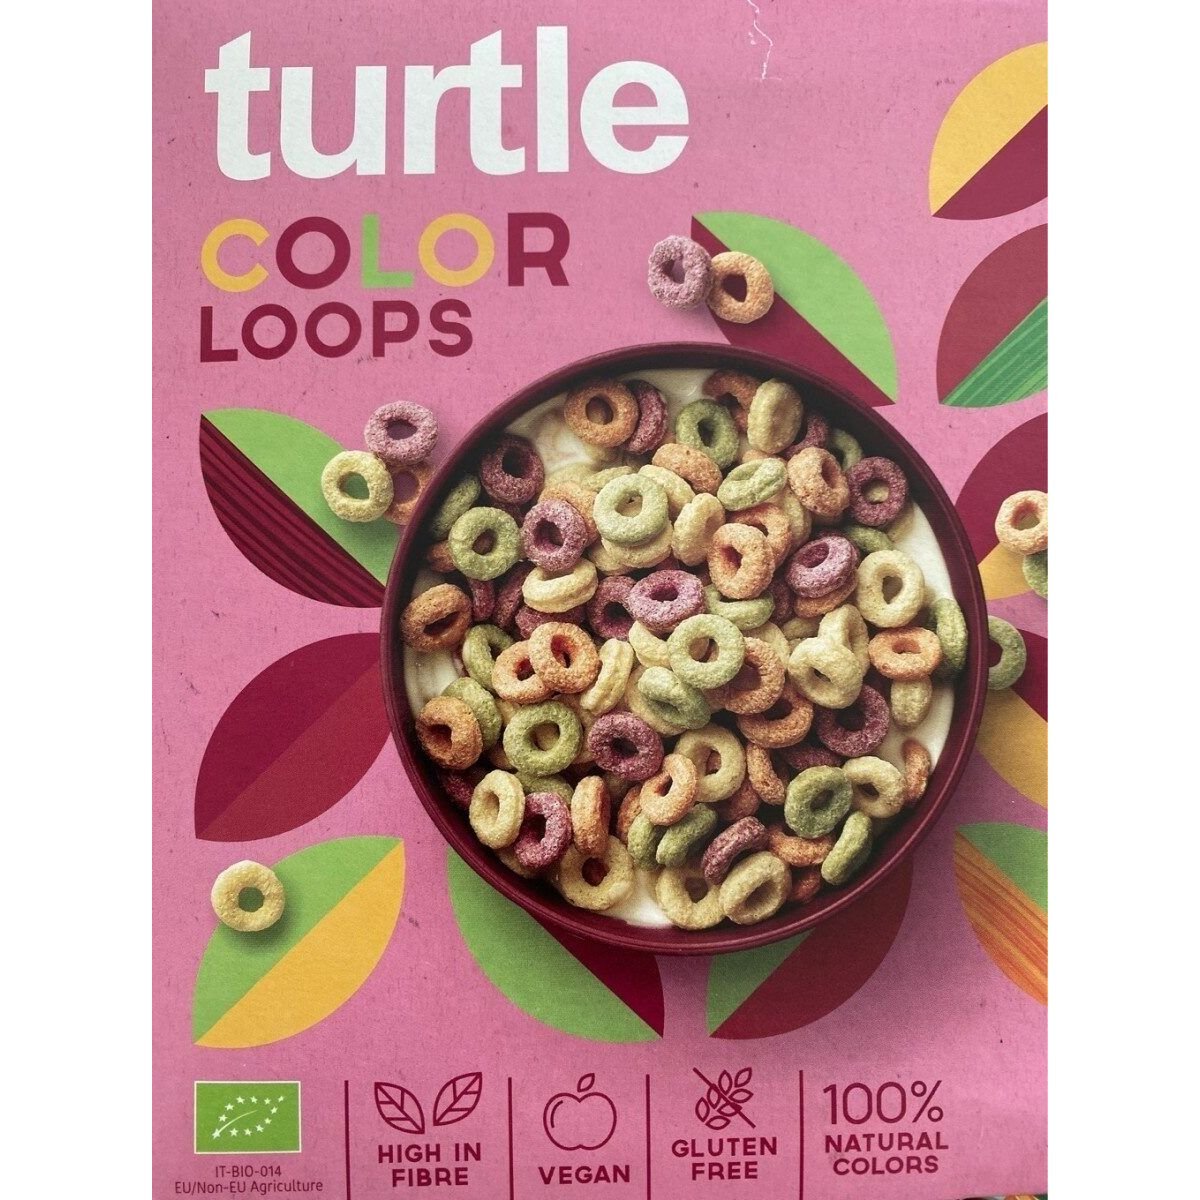 Сухой завтрак Turtle Цветные кольца органический без глютена 300 г + рисовый напиток Via Mia с фундуком органический 1 л - фото 2